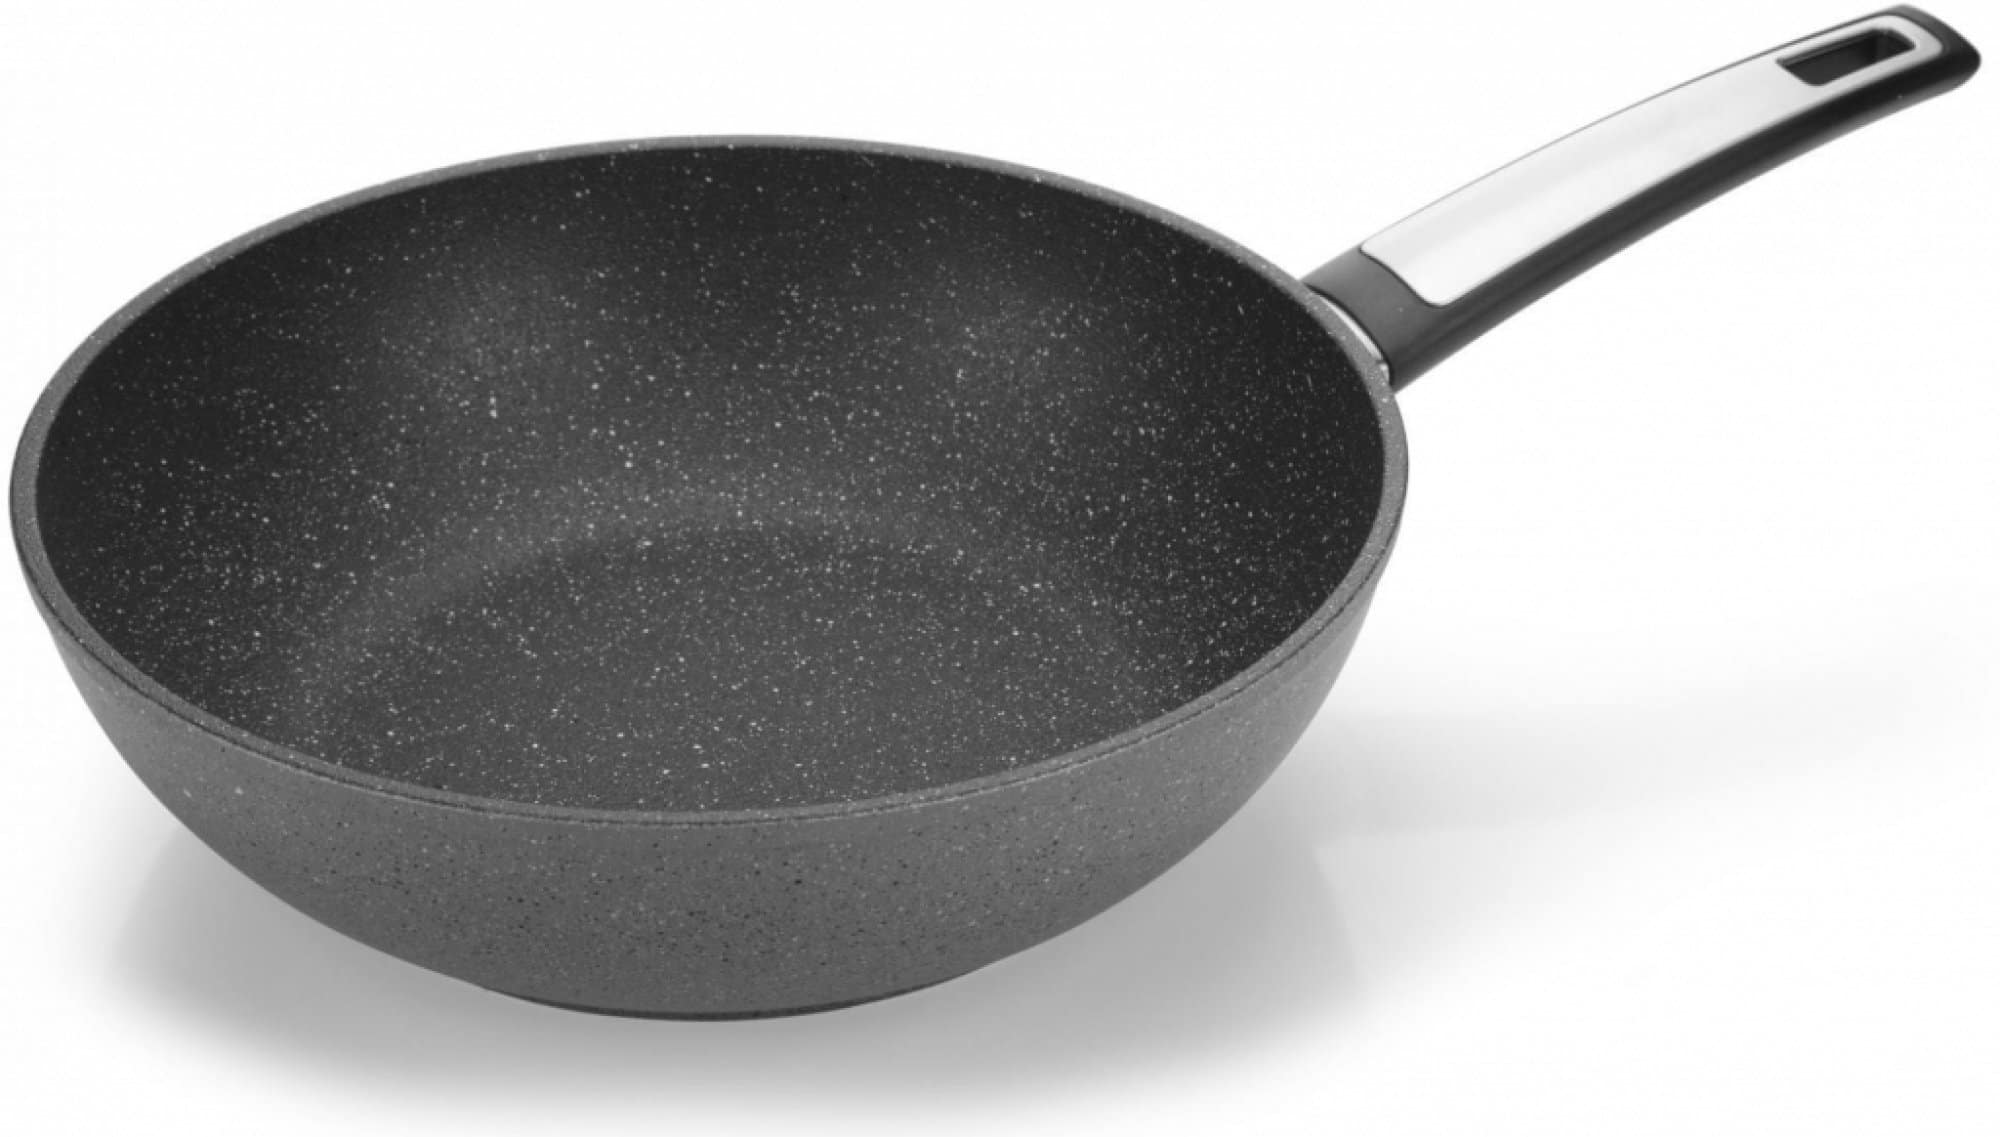 Tescoma hluboká wok pánev na snadné vaření.